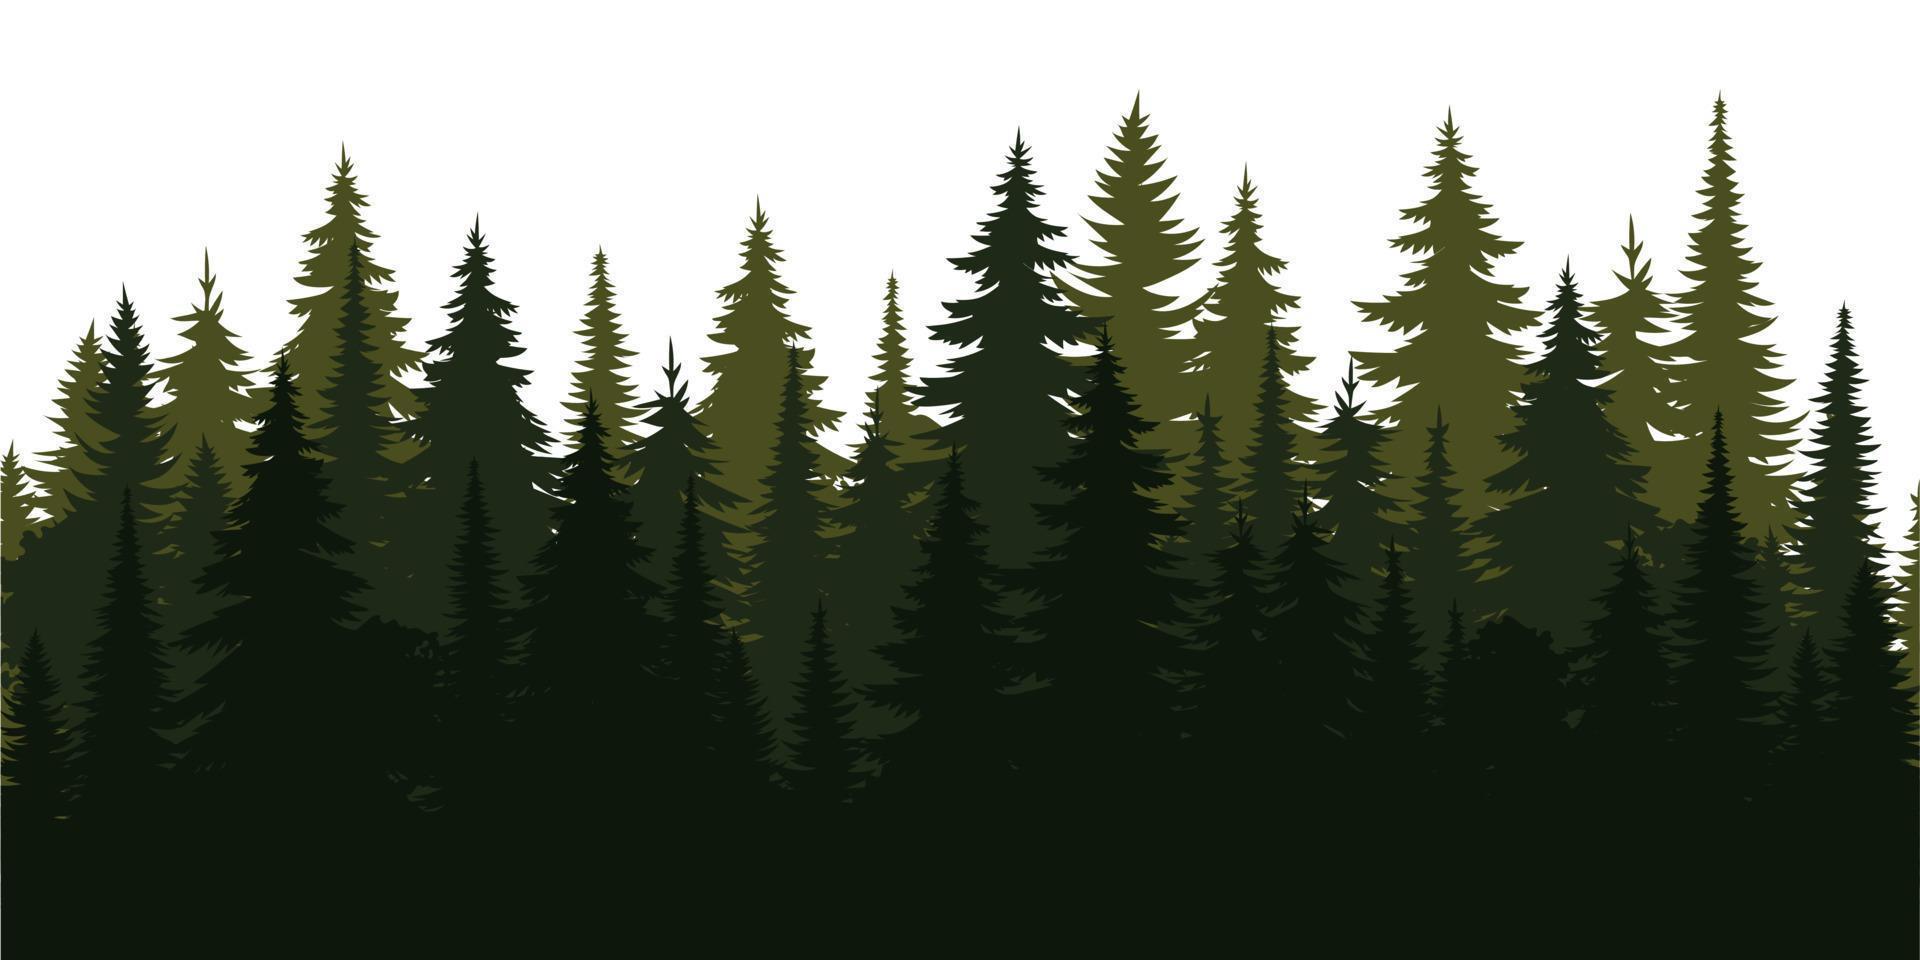 paysage de silhouette de la nature. pins de la forêt de printemps. illustration vectorielle de l'été. conception d'illustration d'arbre d'hiver. collection de vecteurs pour noël vecteur